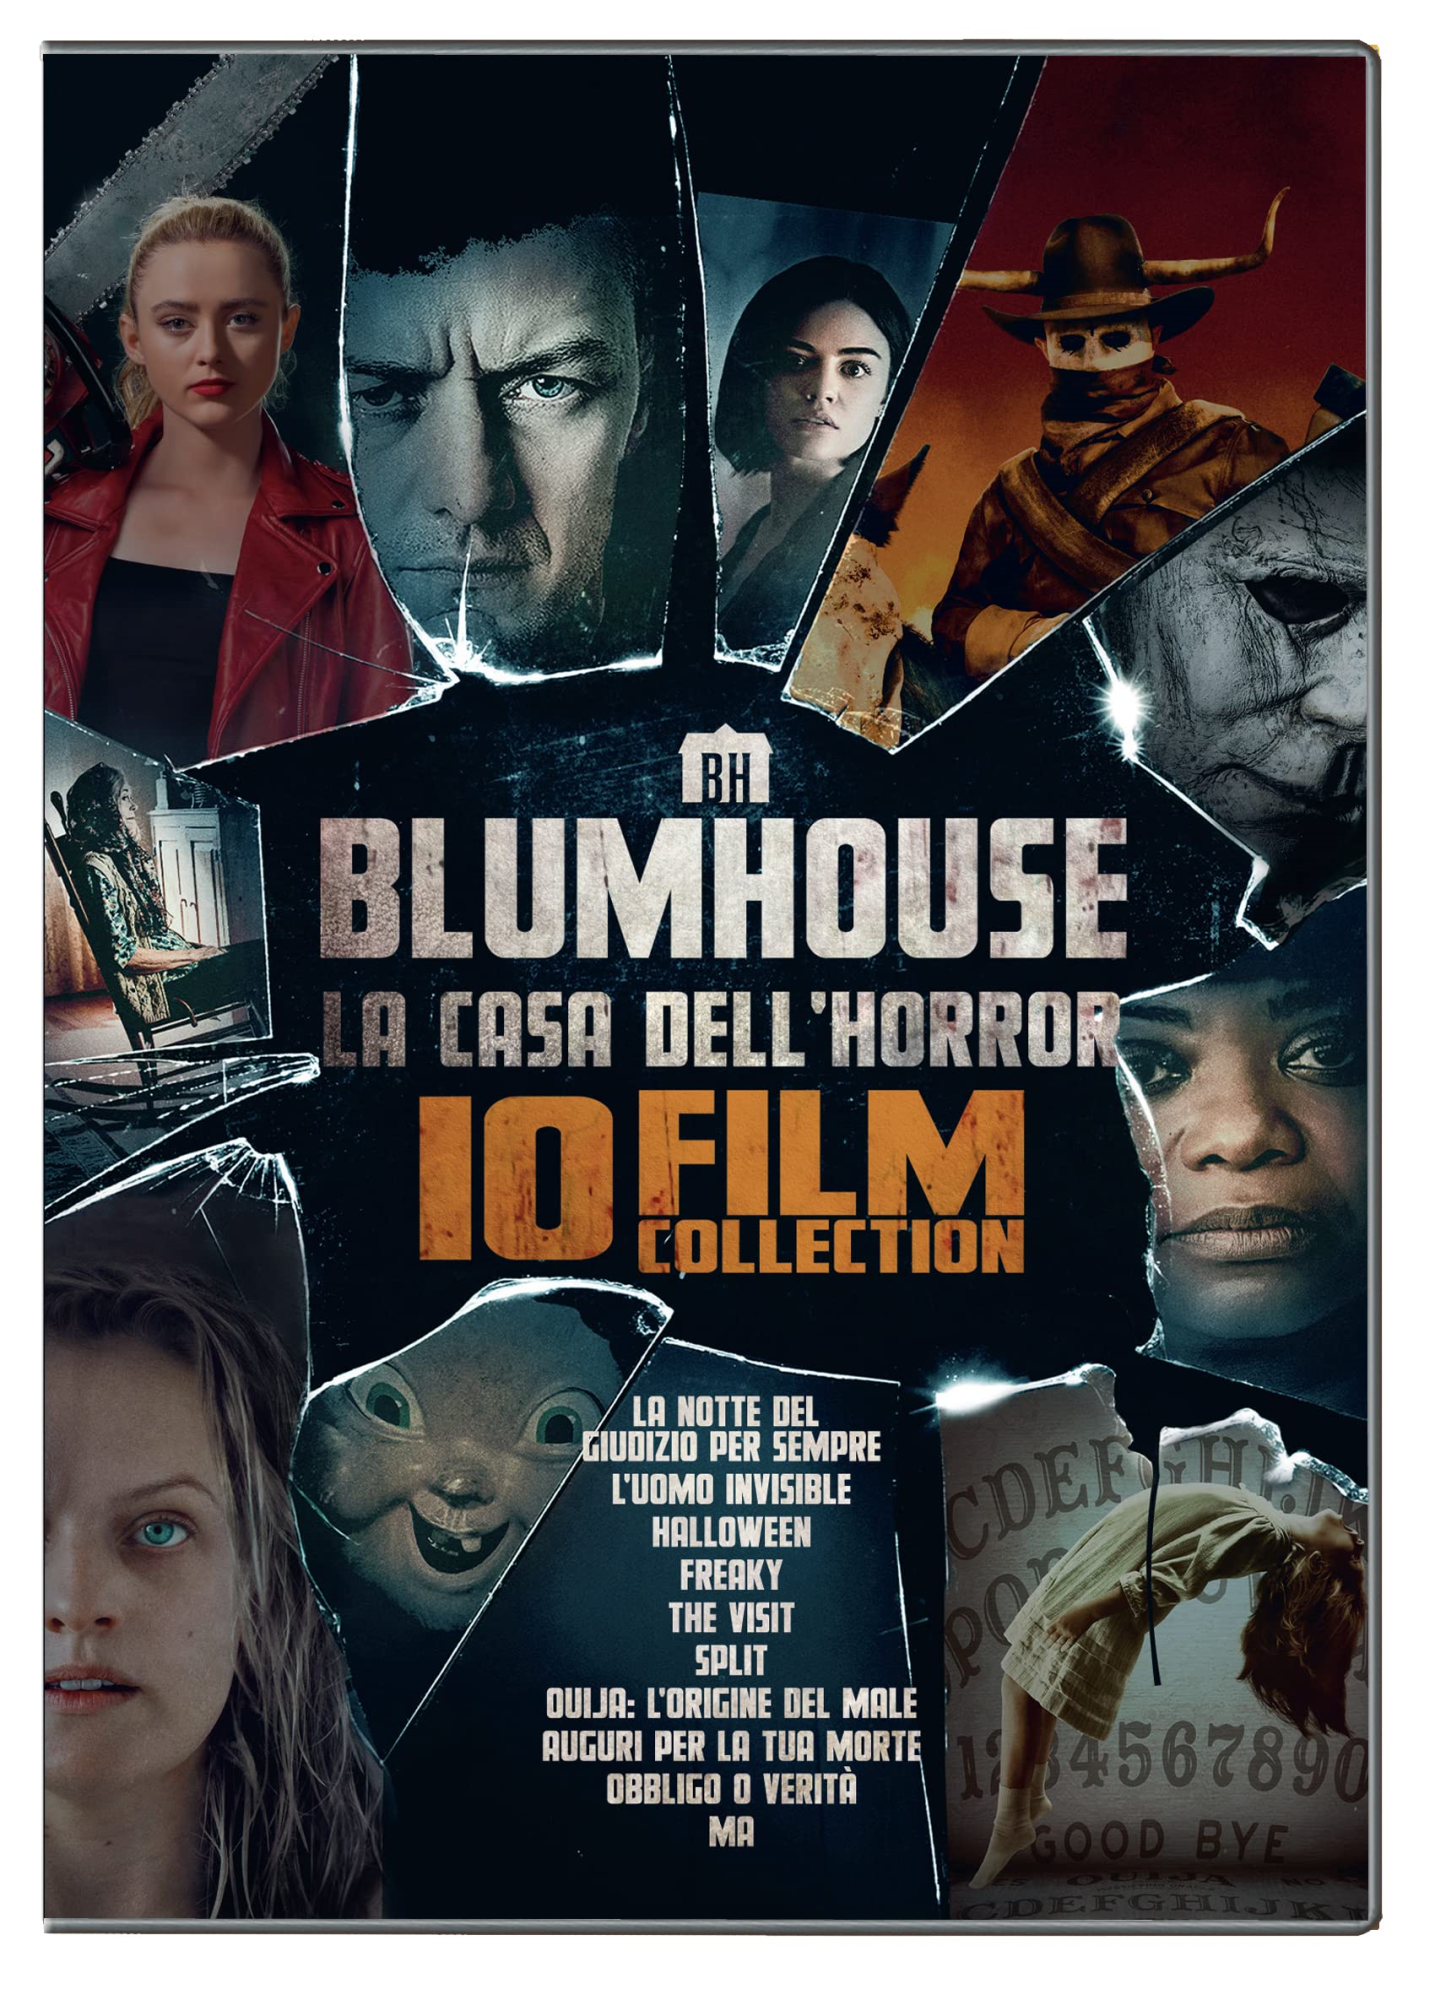 Dvd Blumhouse Horror Collection 10 Film (10 Dvd) NUOVO SIGILLATO, EDIZIONE DEL 17/11/2021 SUBITO DISPONIBILE